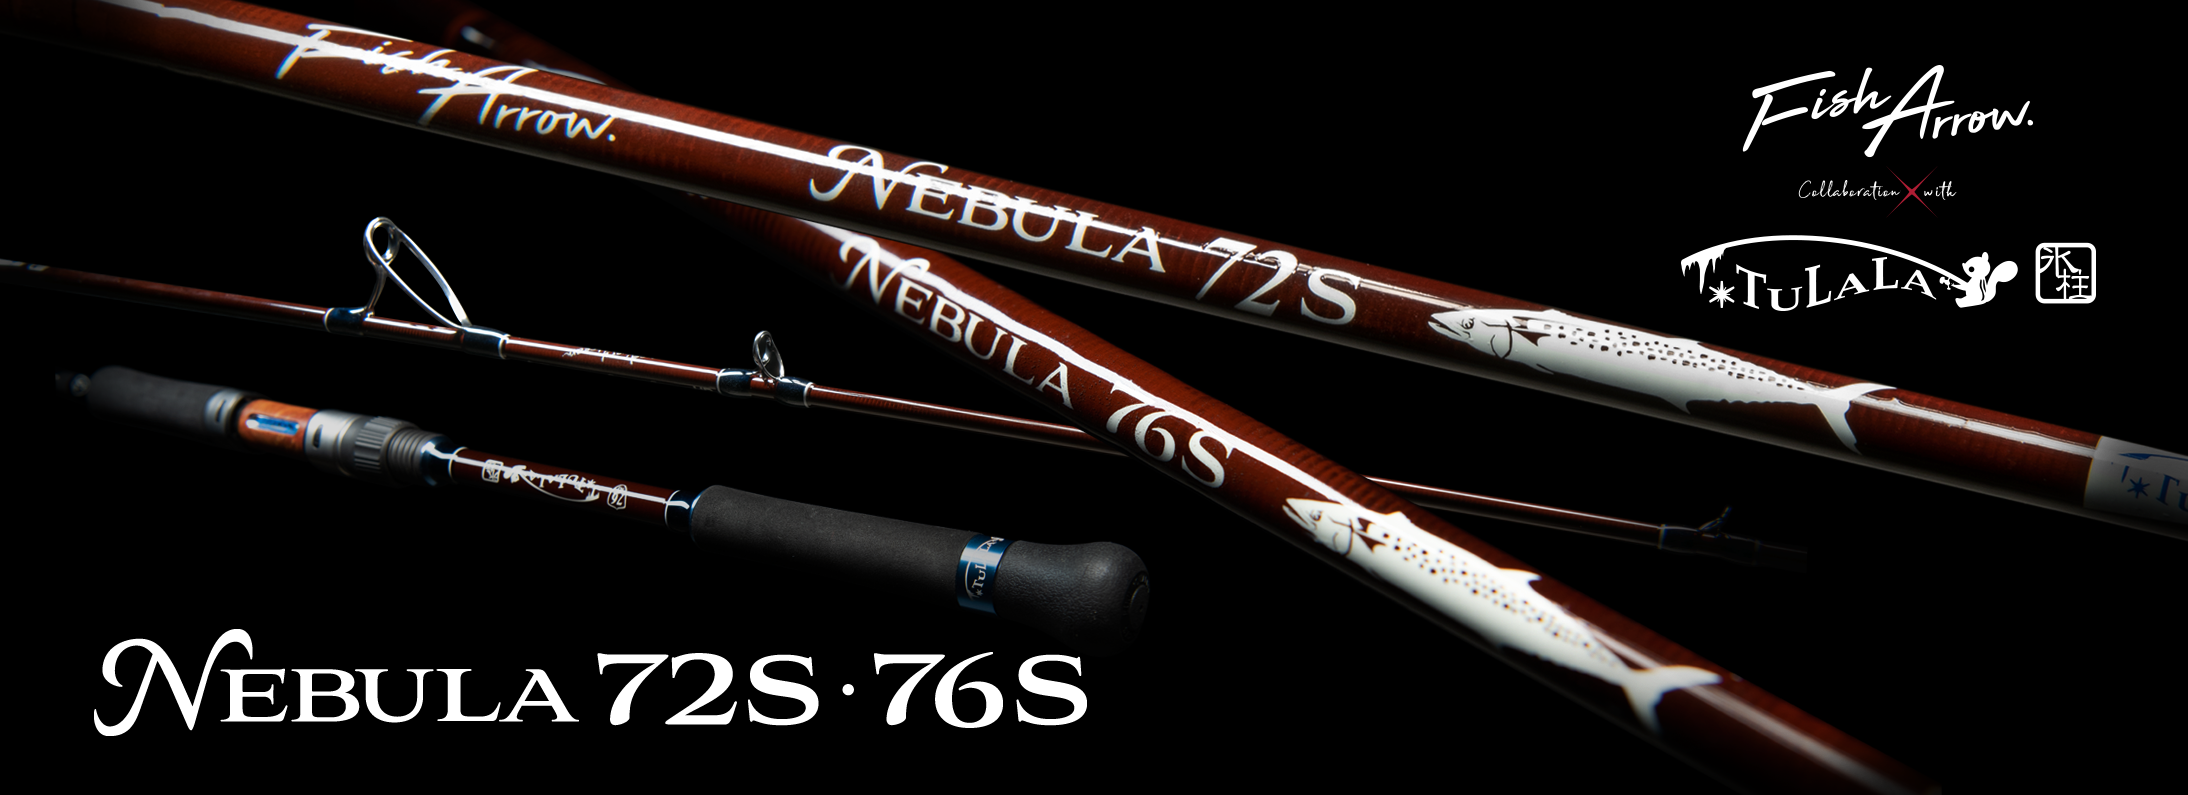 nebula 72S / 76S